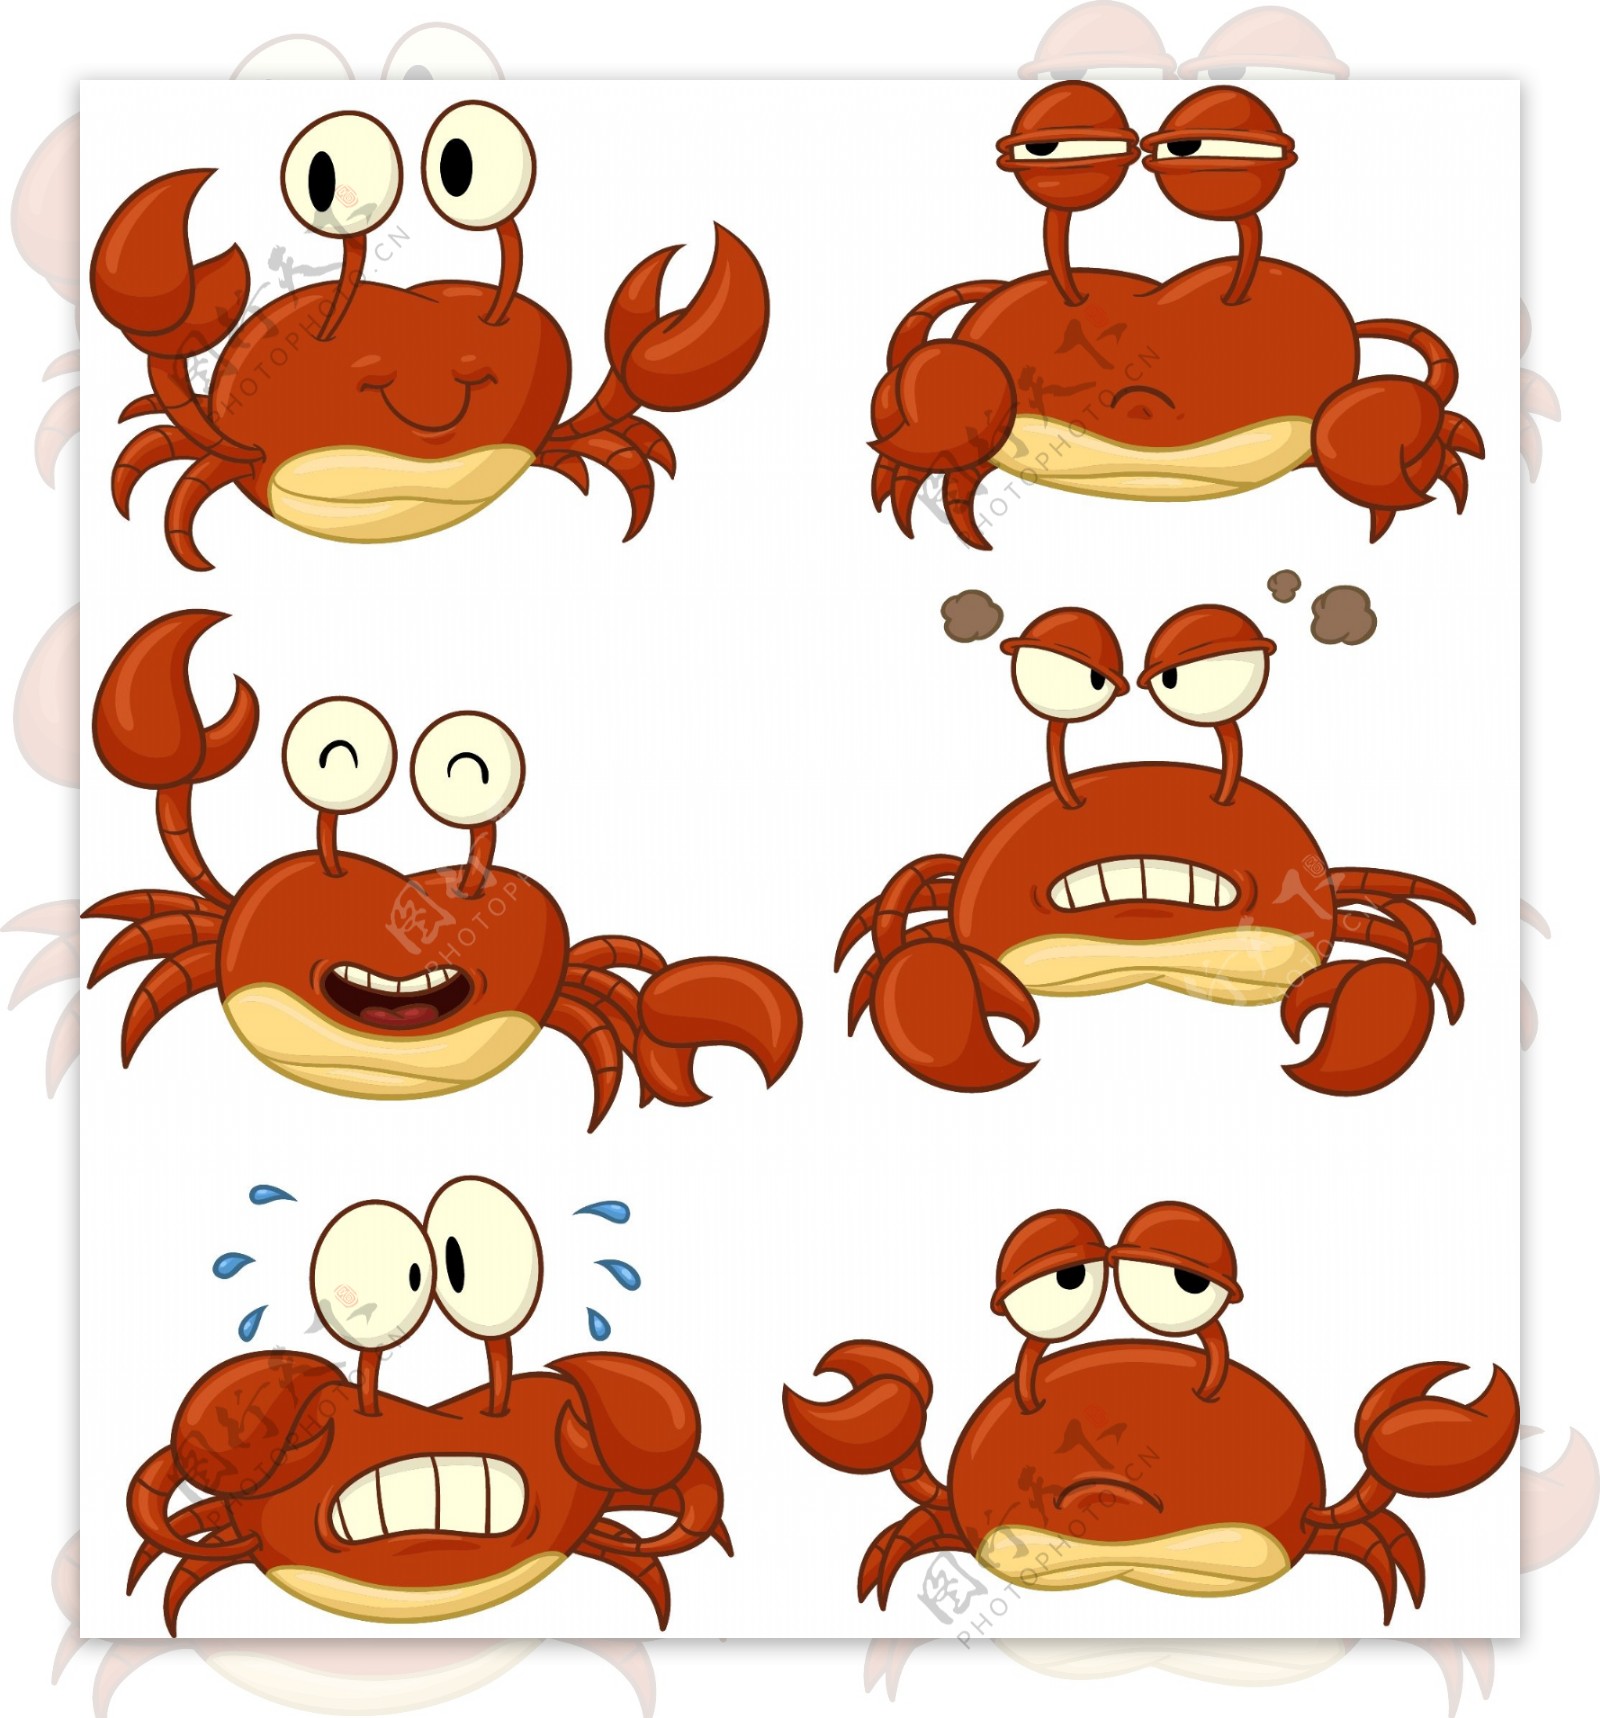 表情丰富的螃蟹